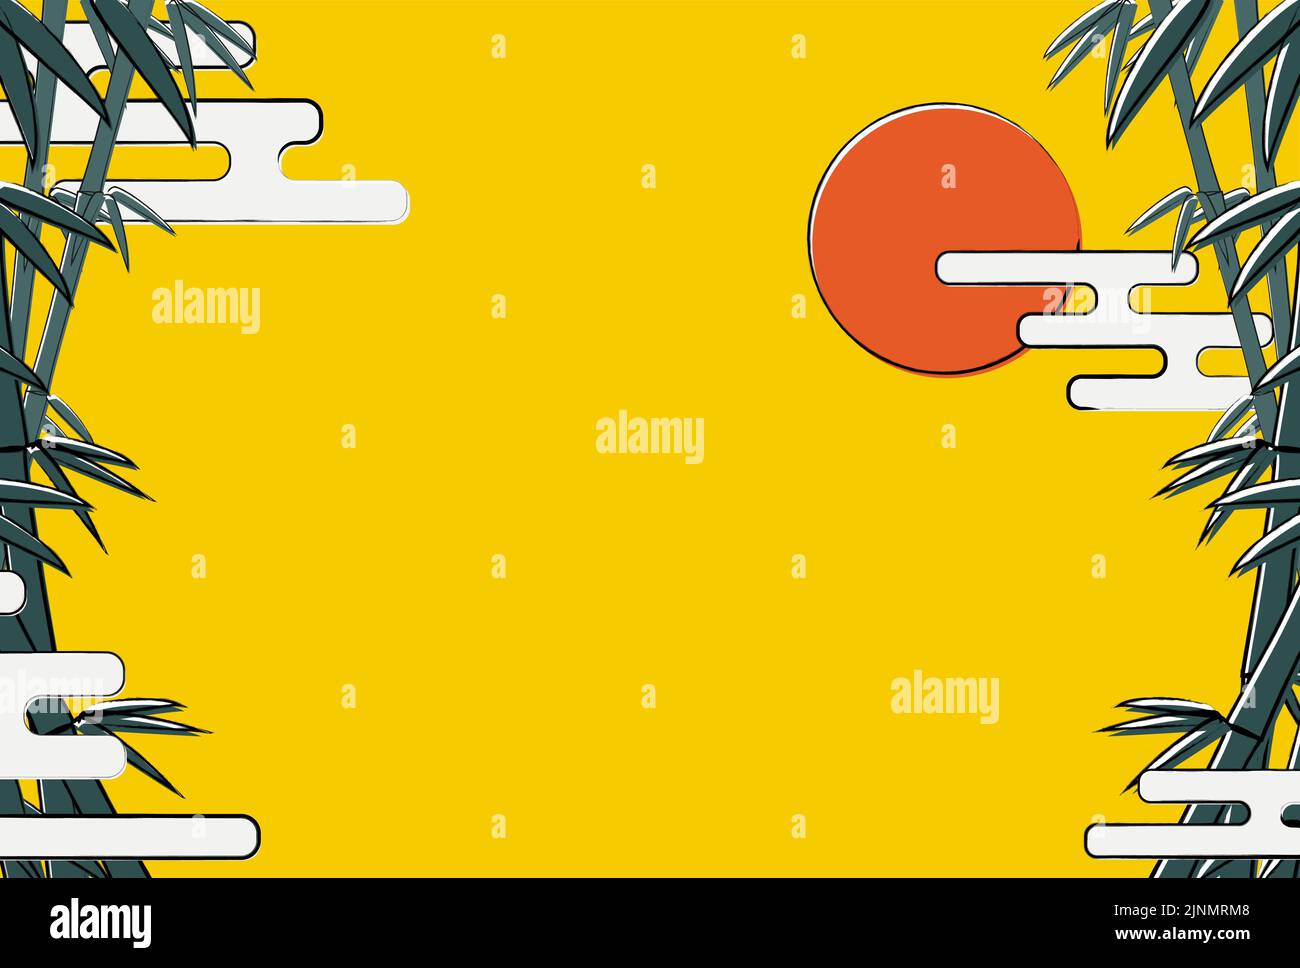 Trübe Bambushain und Sonne Hintergrund Illustration, Postkarte Vorlagengröße Stock Vektor